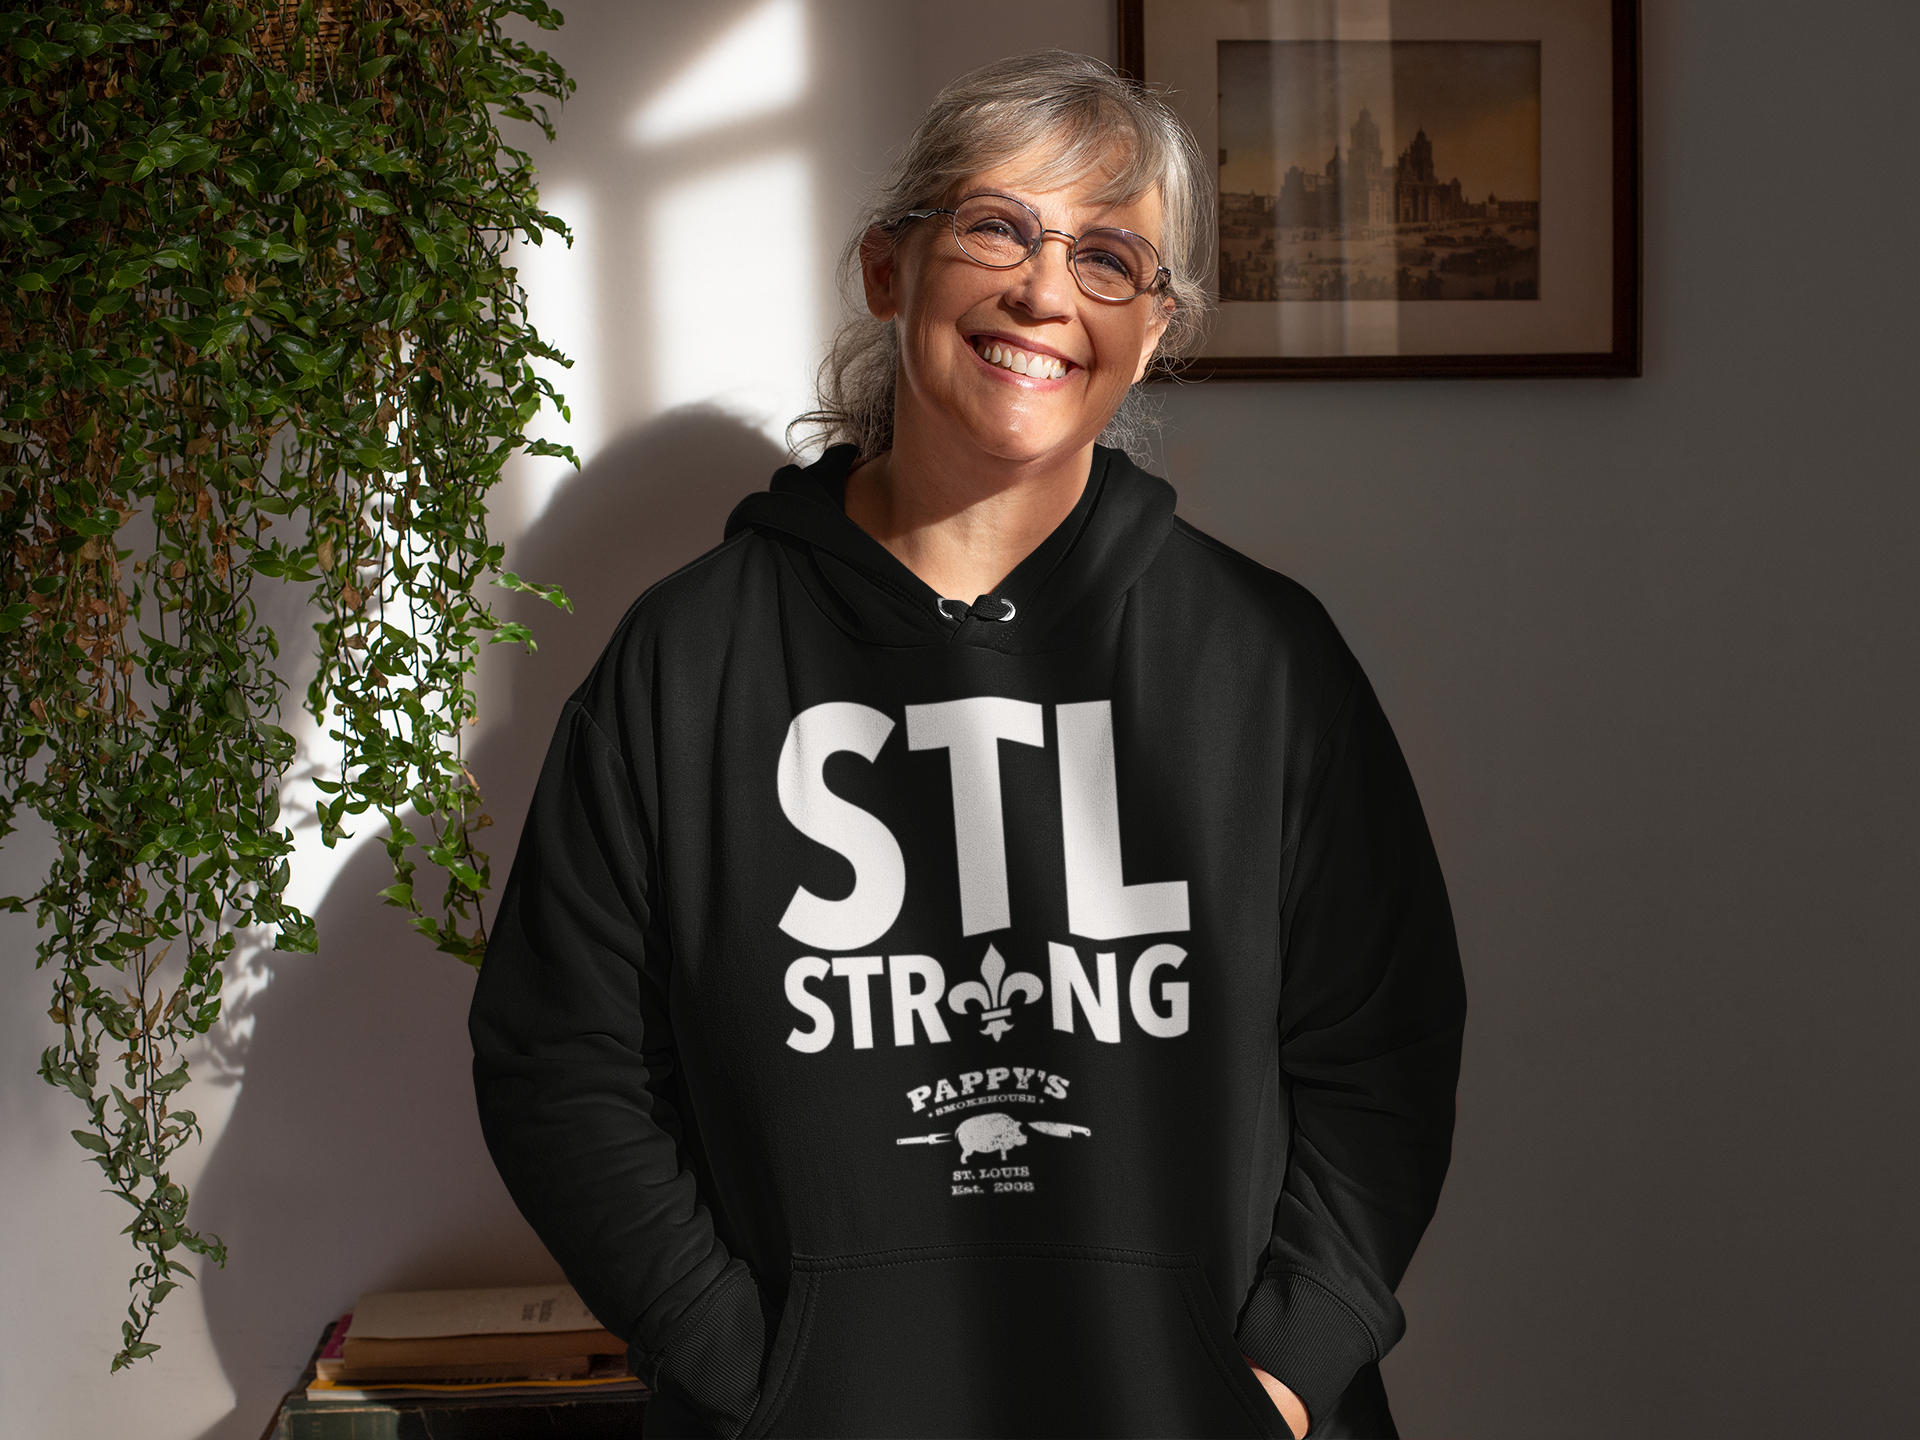 STL STRONG local fundraiser custom apparel OMG